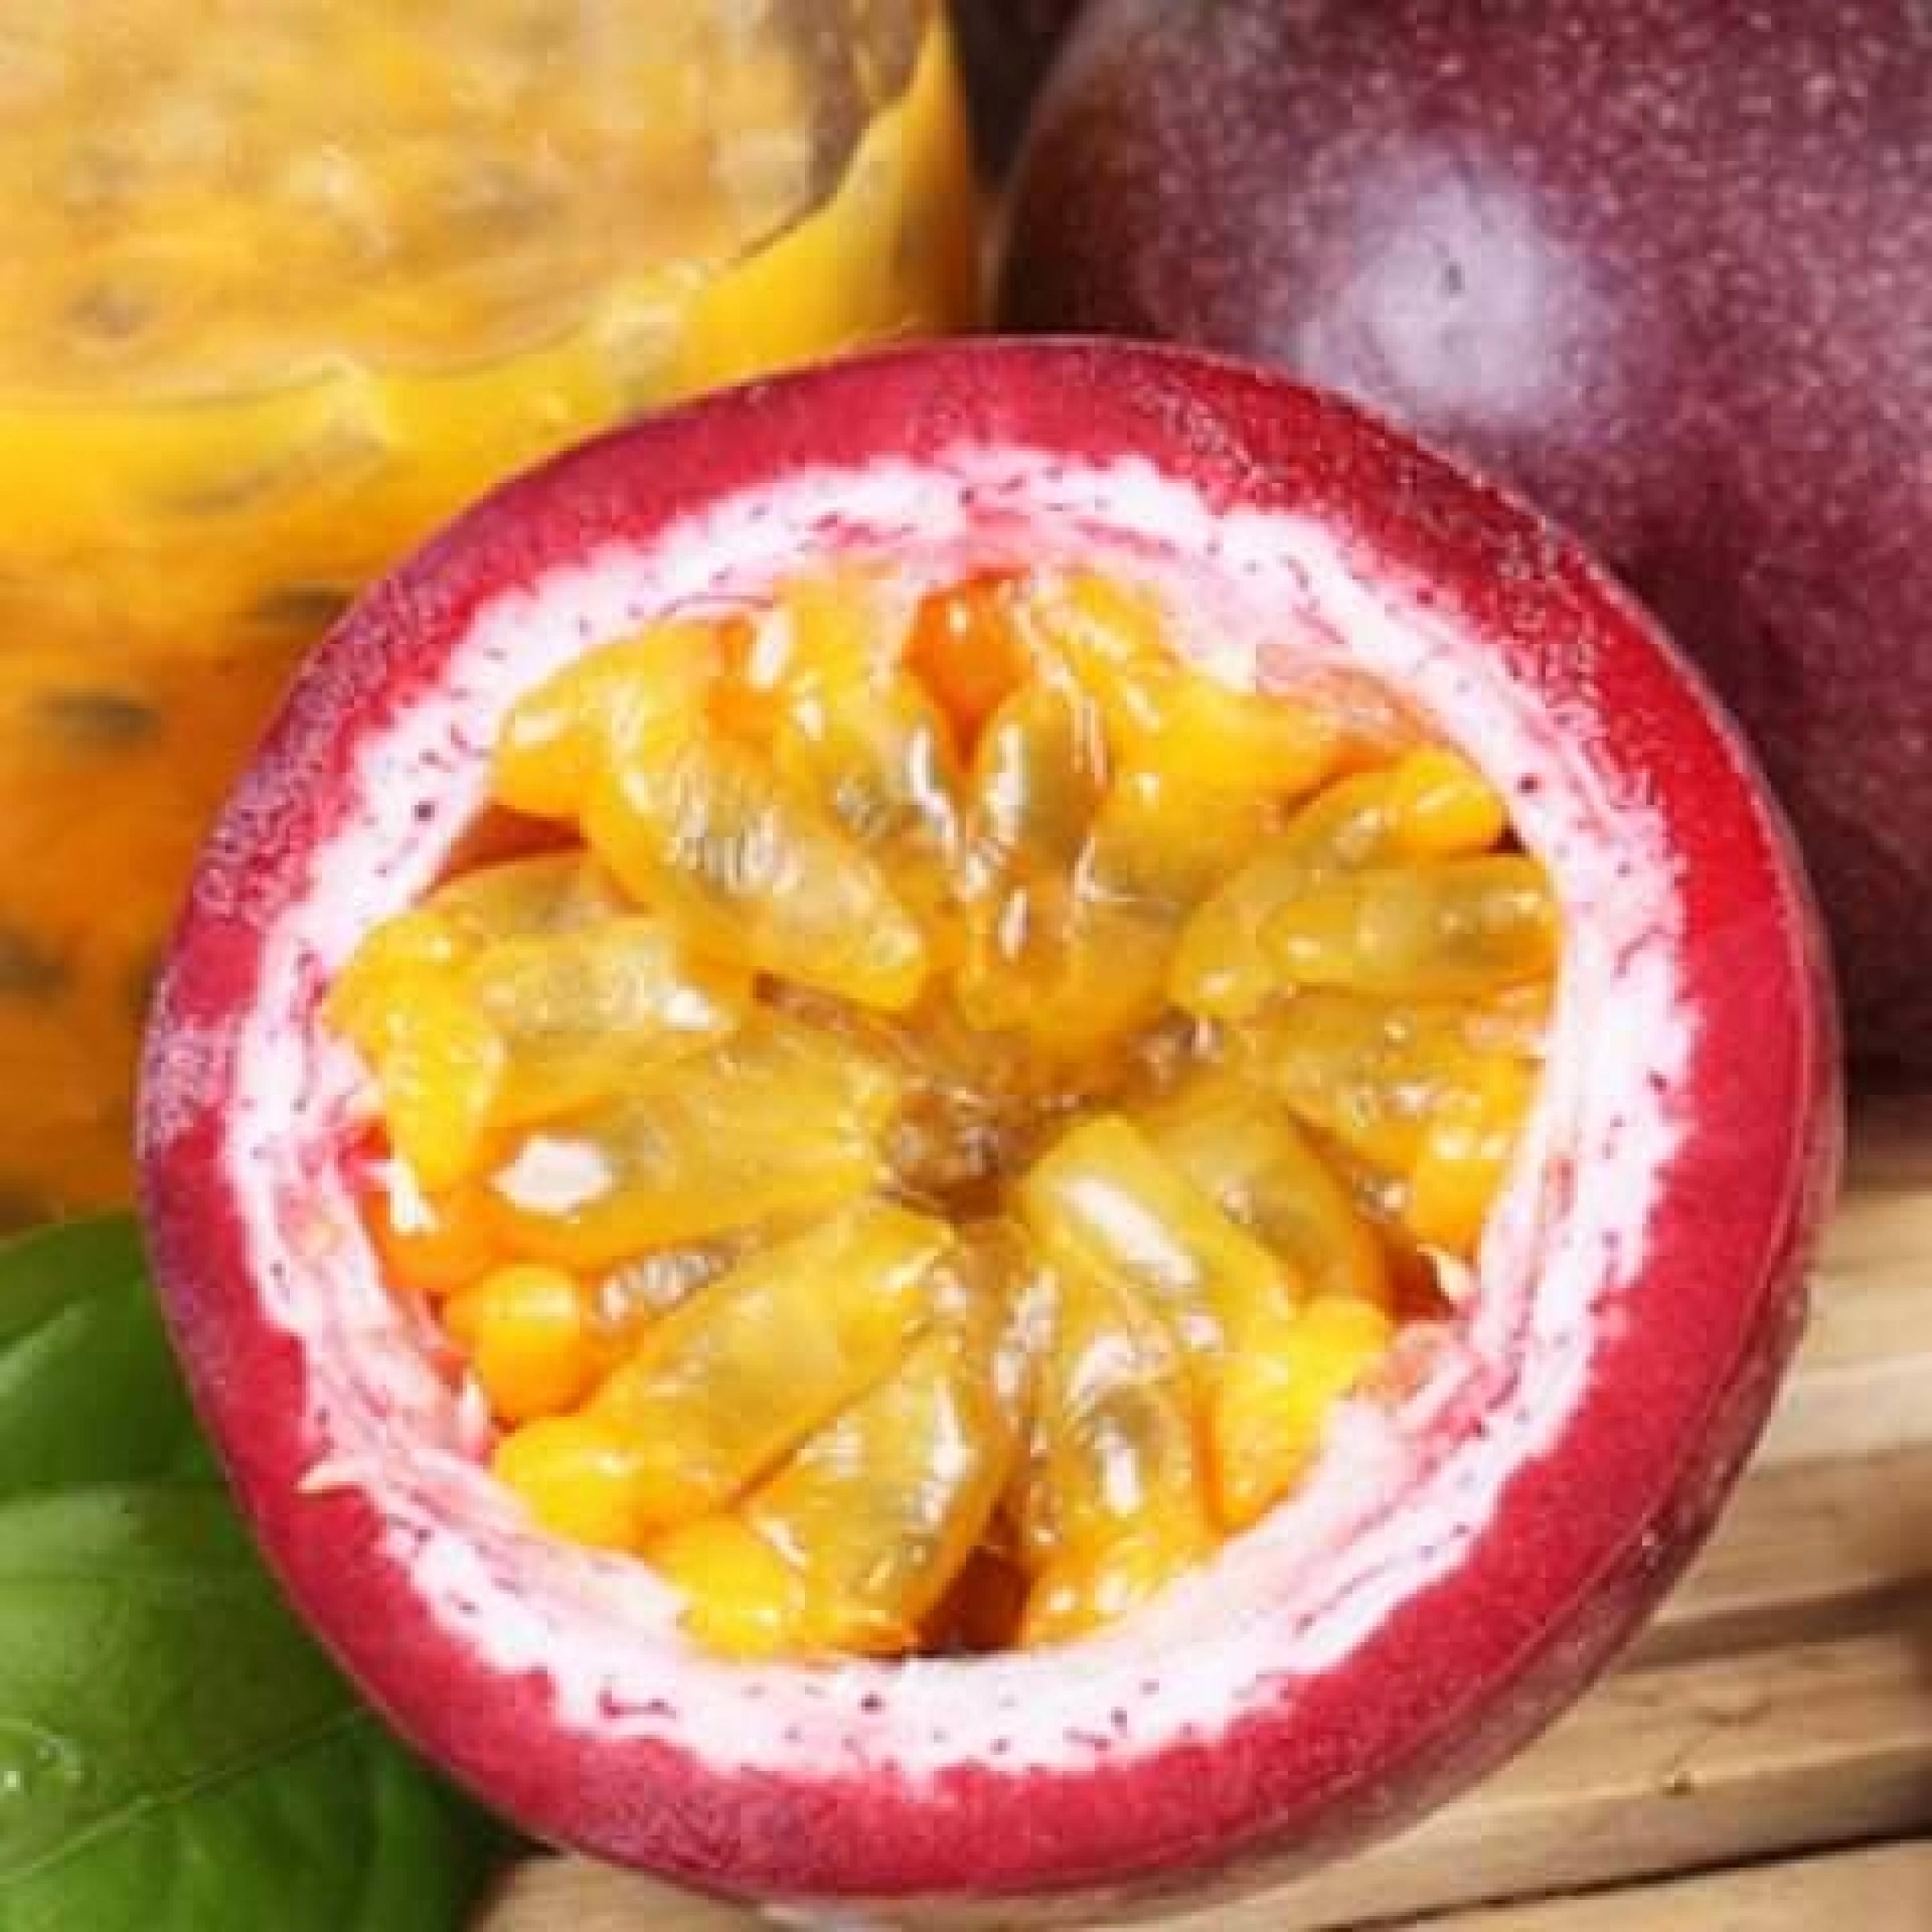 有一种水果,营养十分高,含有17种氨基酸,真正的水果之王!